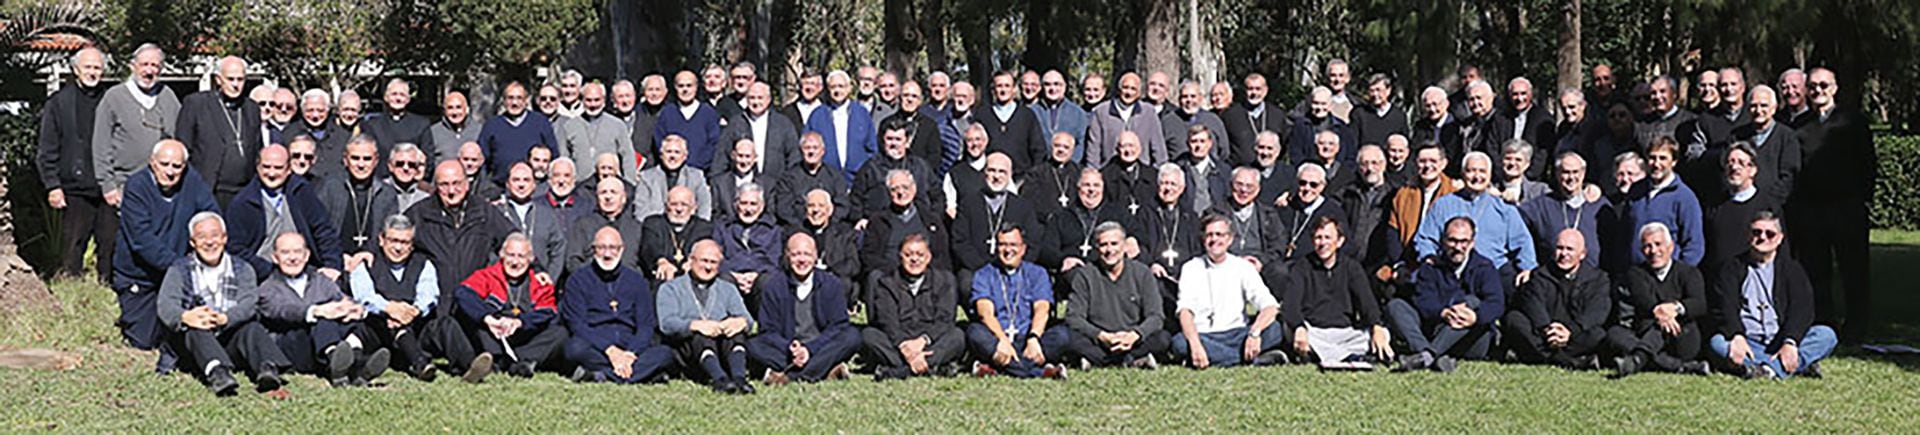 Conferencia Episcopal Argentina